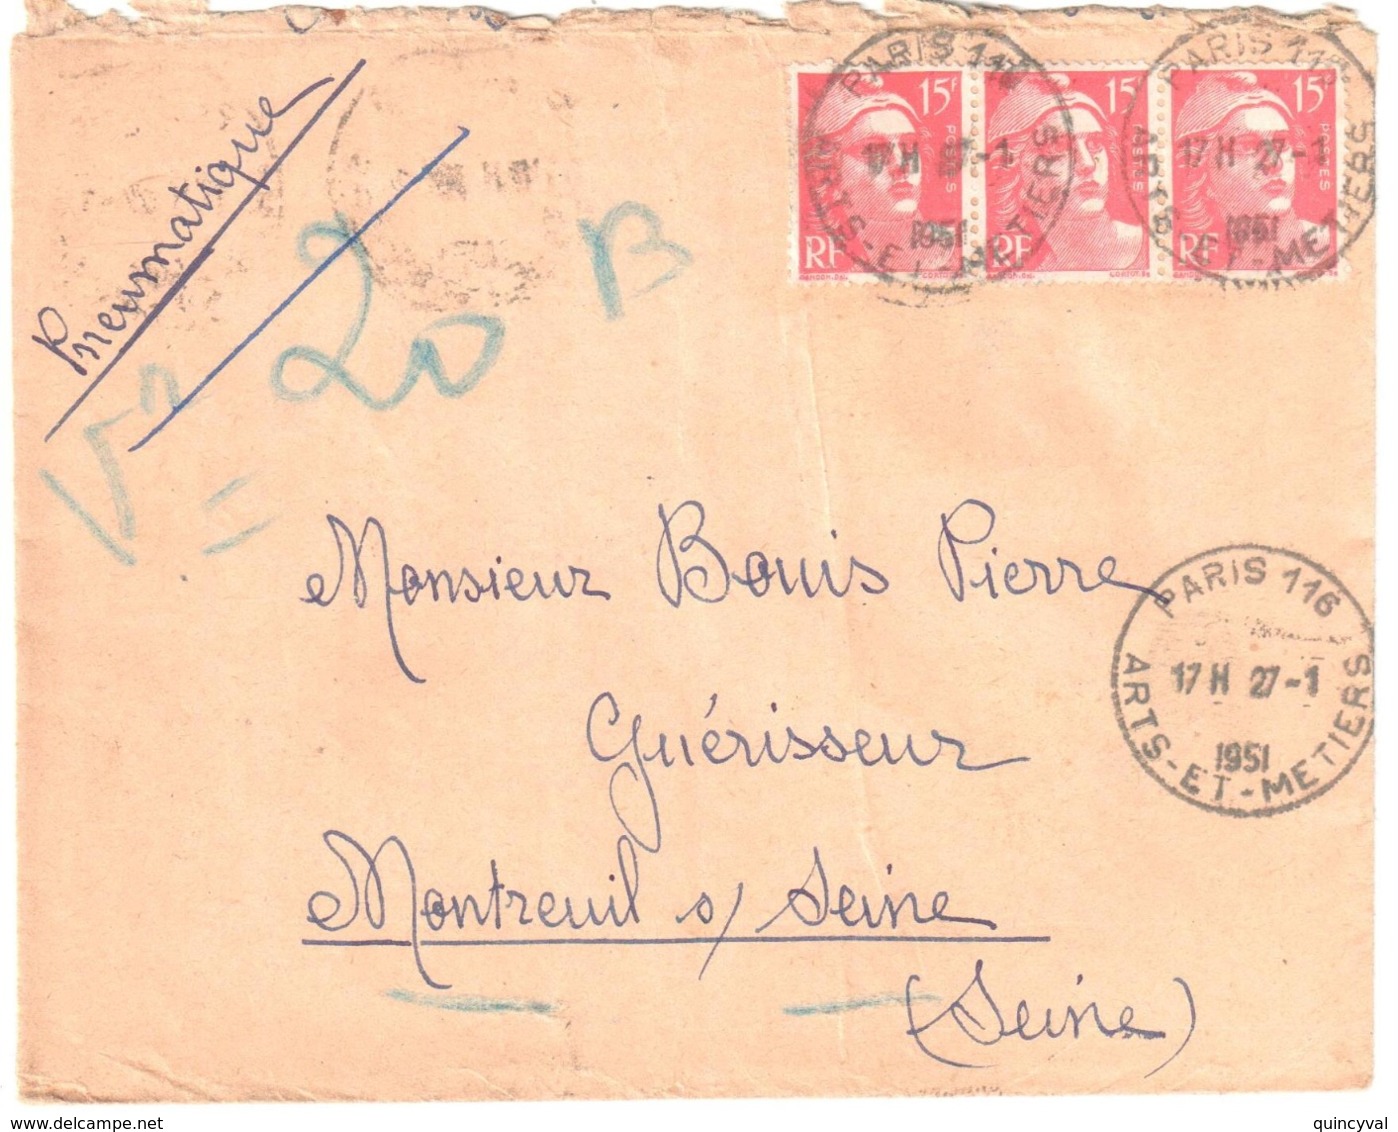 PARIS 116 Arts-et-Métiers 15 F Gandon Rouge Yv 813 Ob 27 1 1955 Dest Montreuil Sous Bois - Briefe U. Dokumente